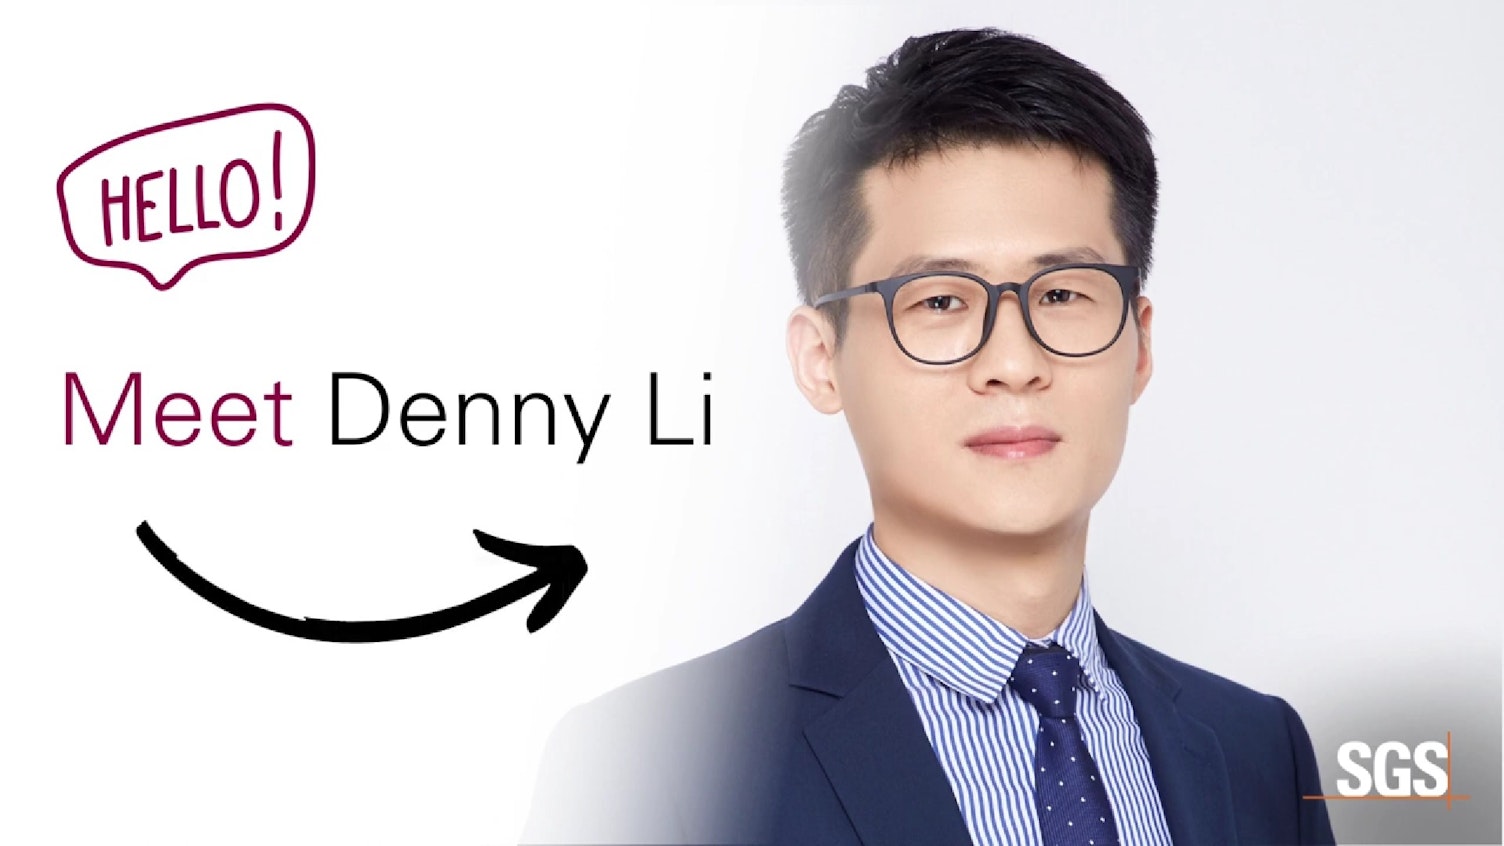 Conheça o nosso Especialista em Cosmética e Higiene, Denny Li